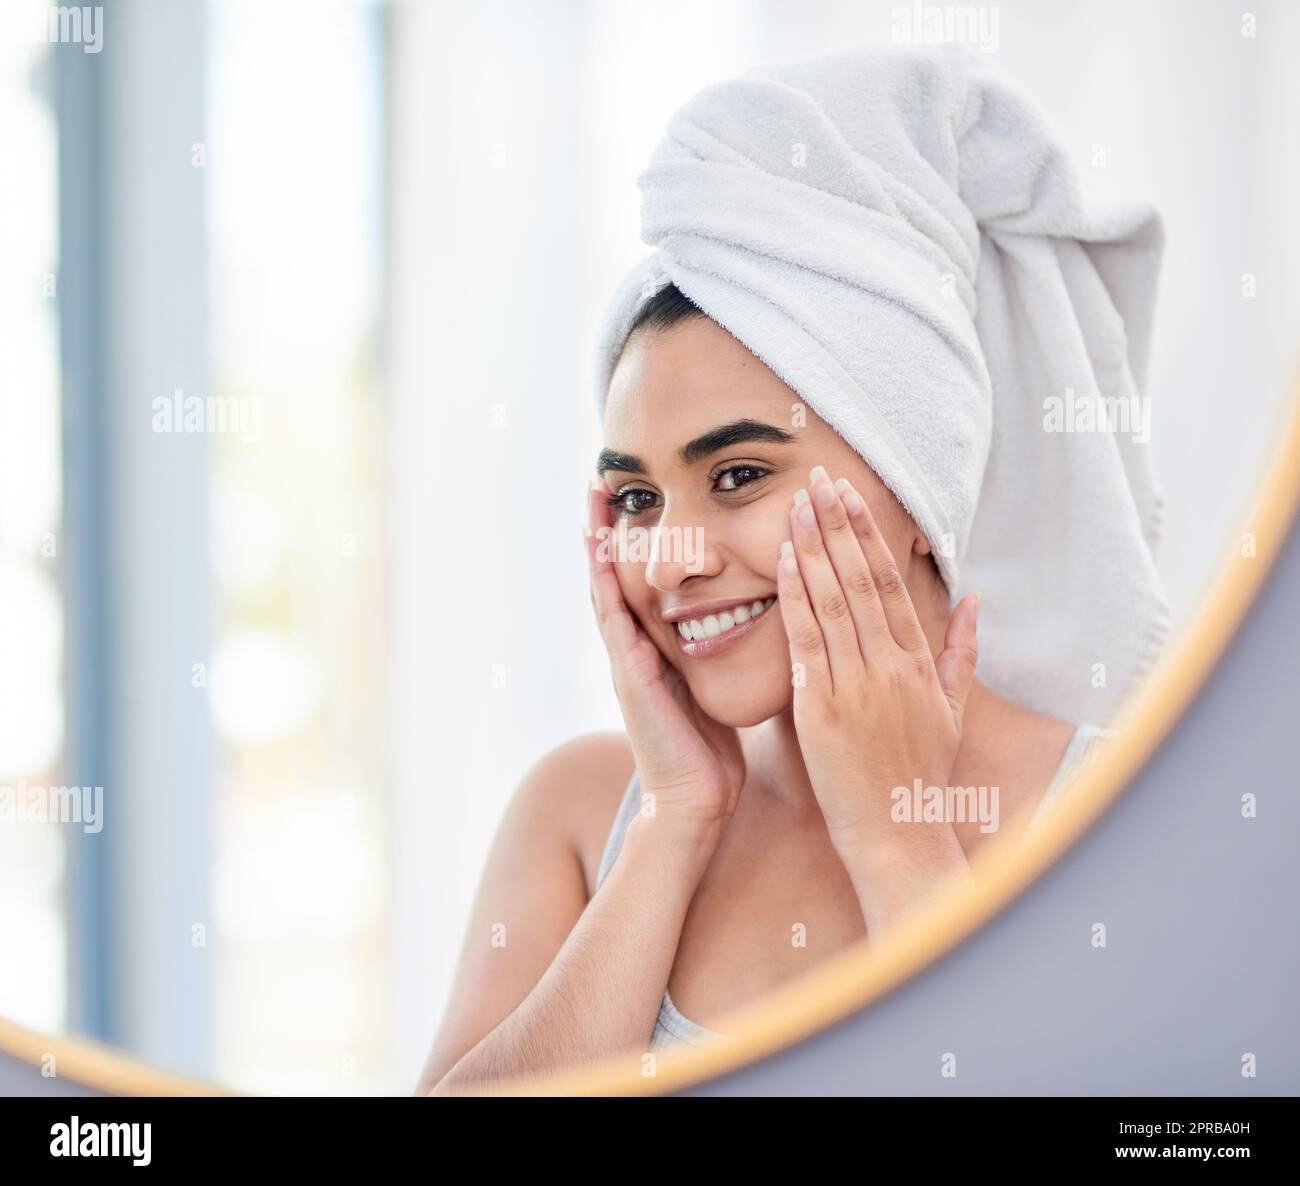 Ma dermatologue sera si heureuse de mes progrès. Jeune femme s'admirant dans son miroir de salle de bains. Banque D'Images